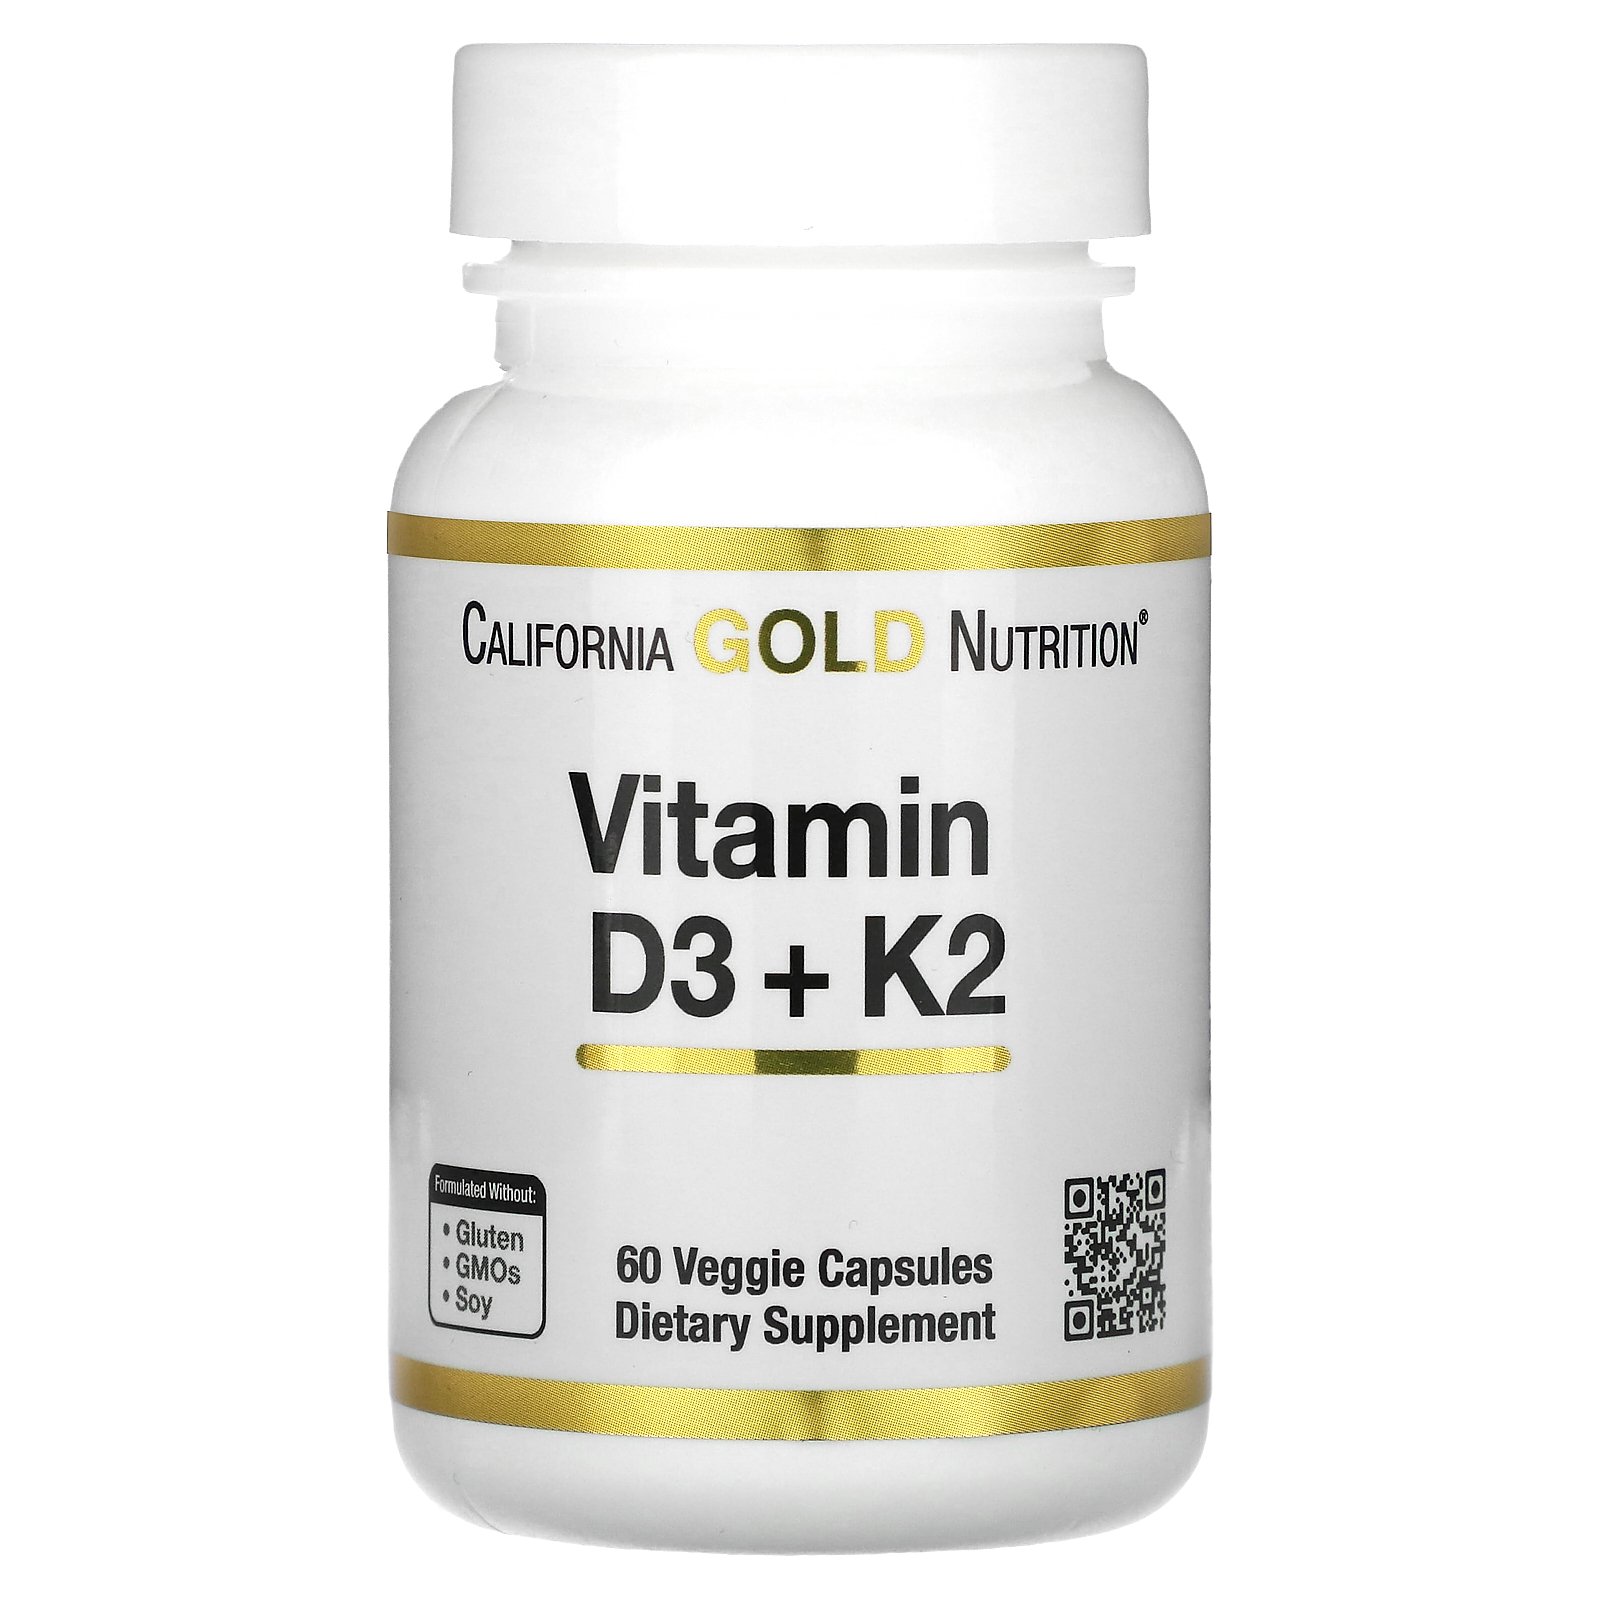 California Gold Nutrition ビタミンD3 + K2  カリフォルニア ゴールド ニュートリション CGN ビタミン D K ビタミン類 ビタミンサプリ サプリメント サプリ ベジカプセル 60粒